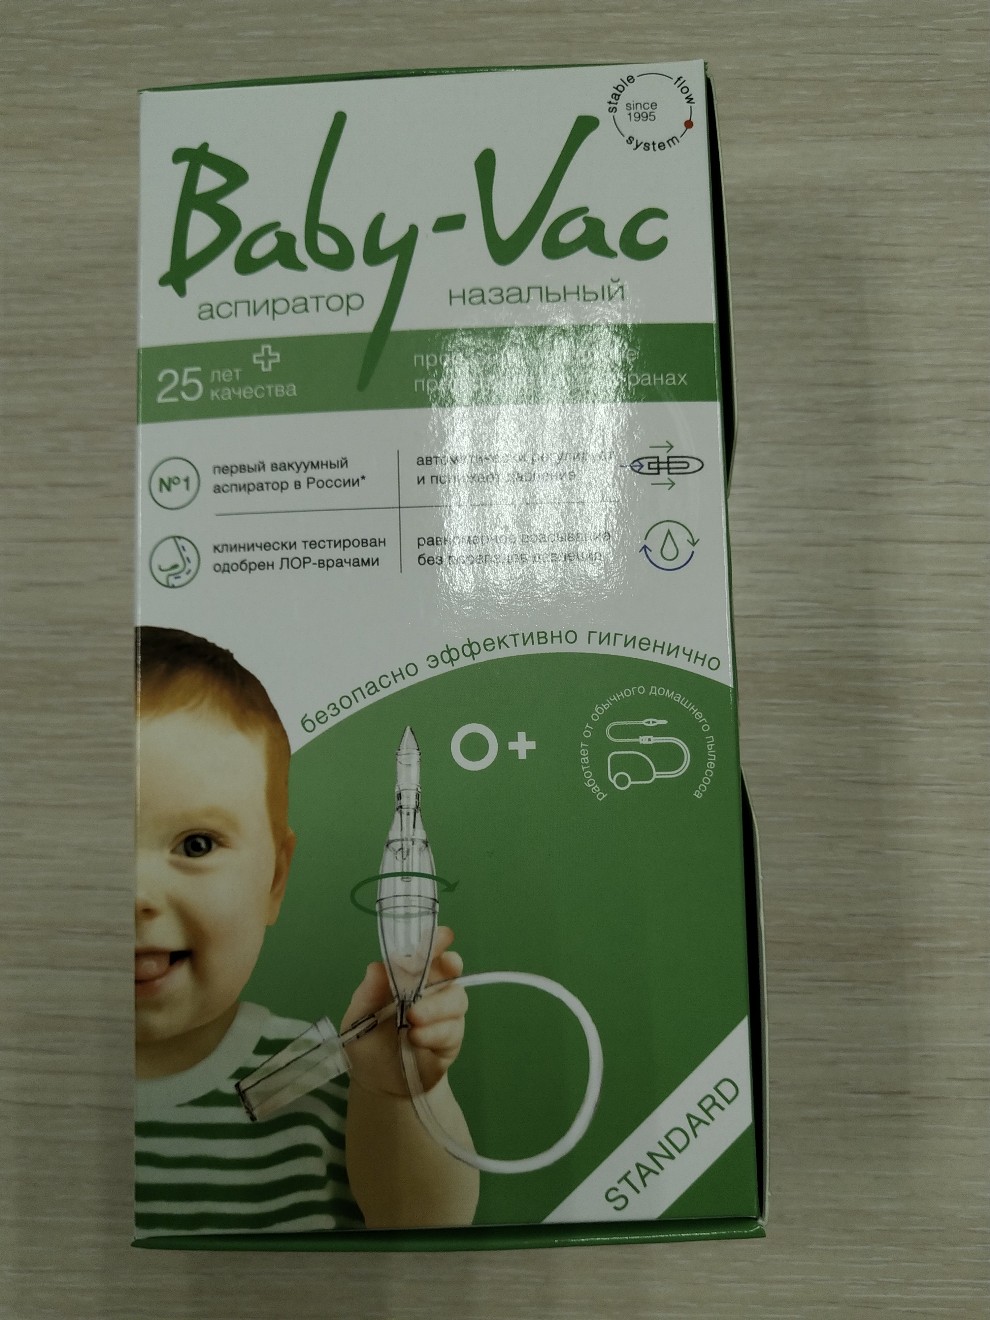 Baby vac аспиратор купить